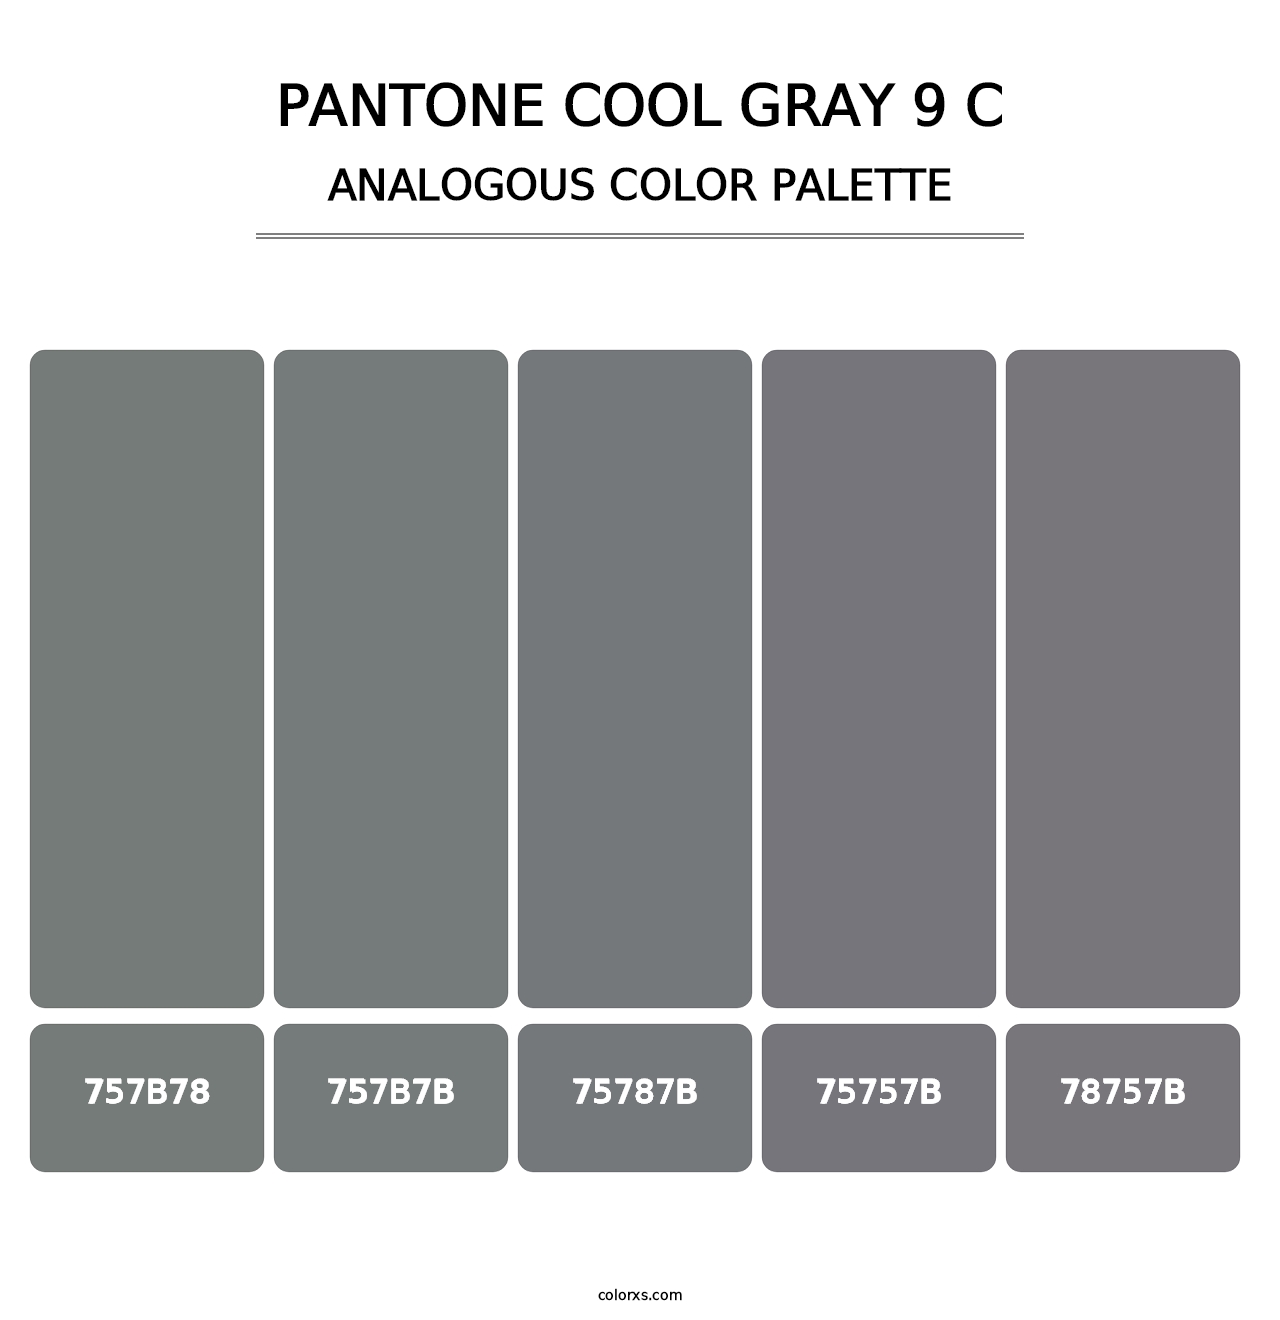 PANTONE Cool Gray 9 C - Analogous Color Palette